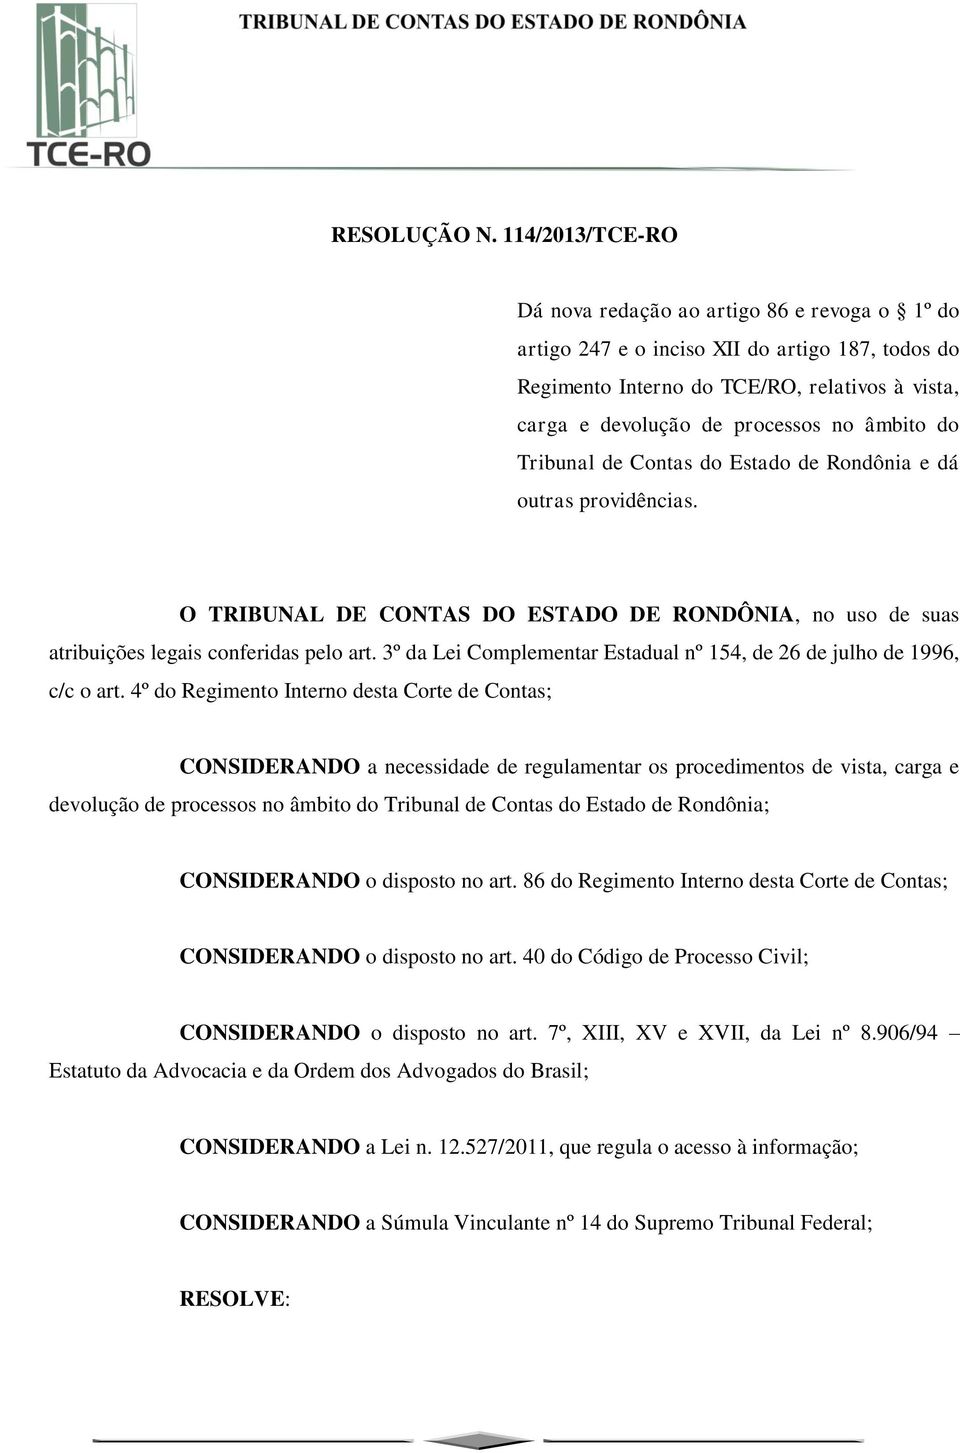 âmbito do Tribunal de Contas do Estado de Rondônia e dá outras providências. O TRIBUNAL DE CONTAS DO ESTADO DE RONDÔNIA, no uso de suas atribuições legais conferidas pelo art.